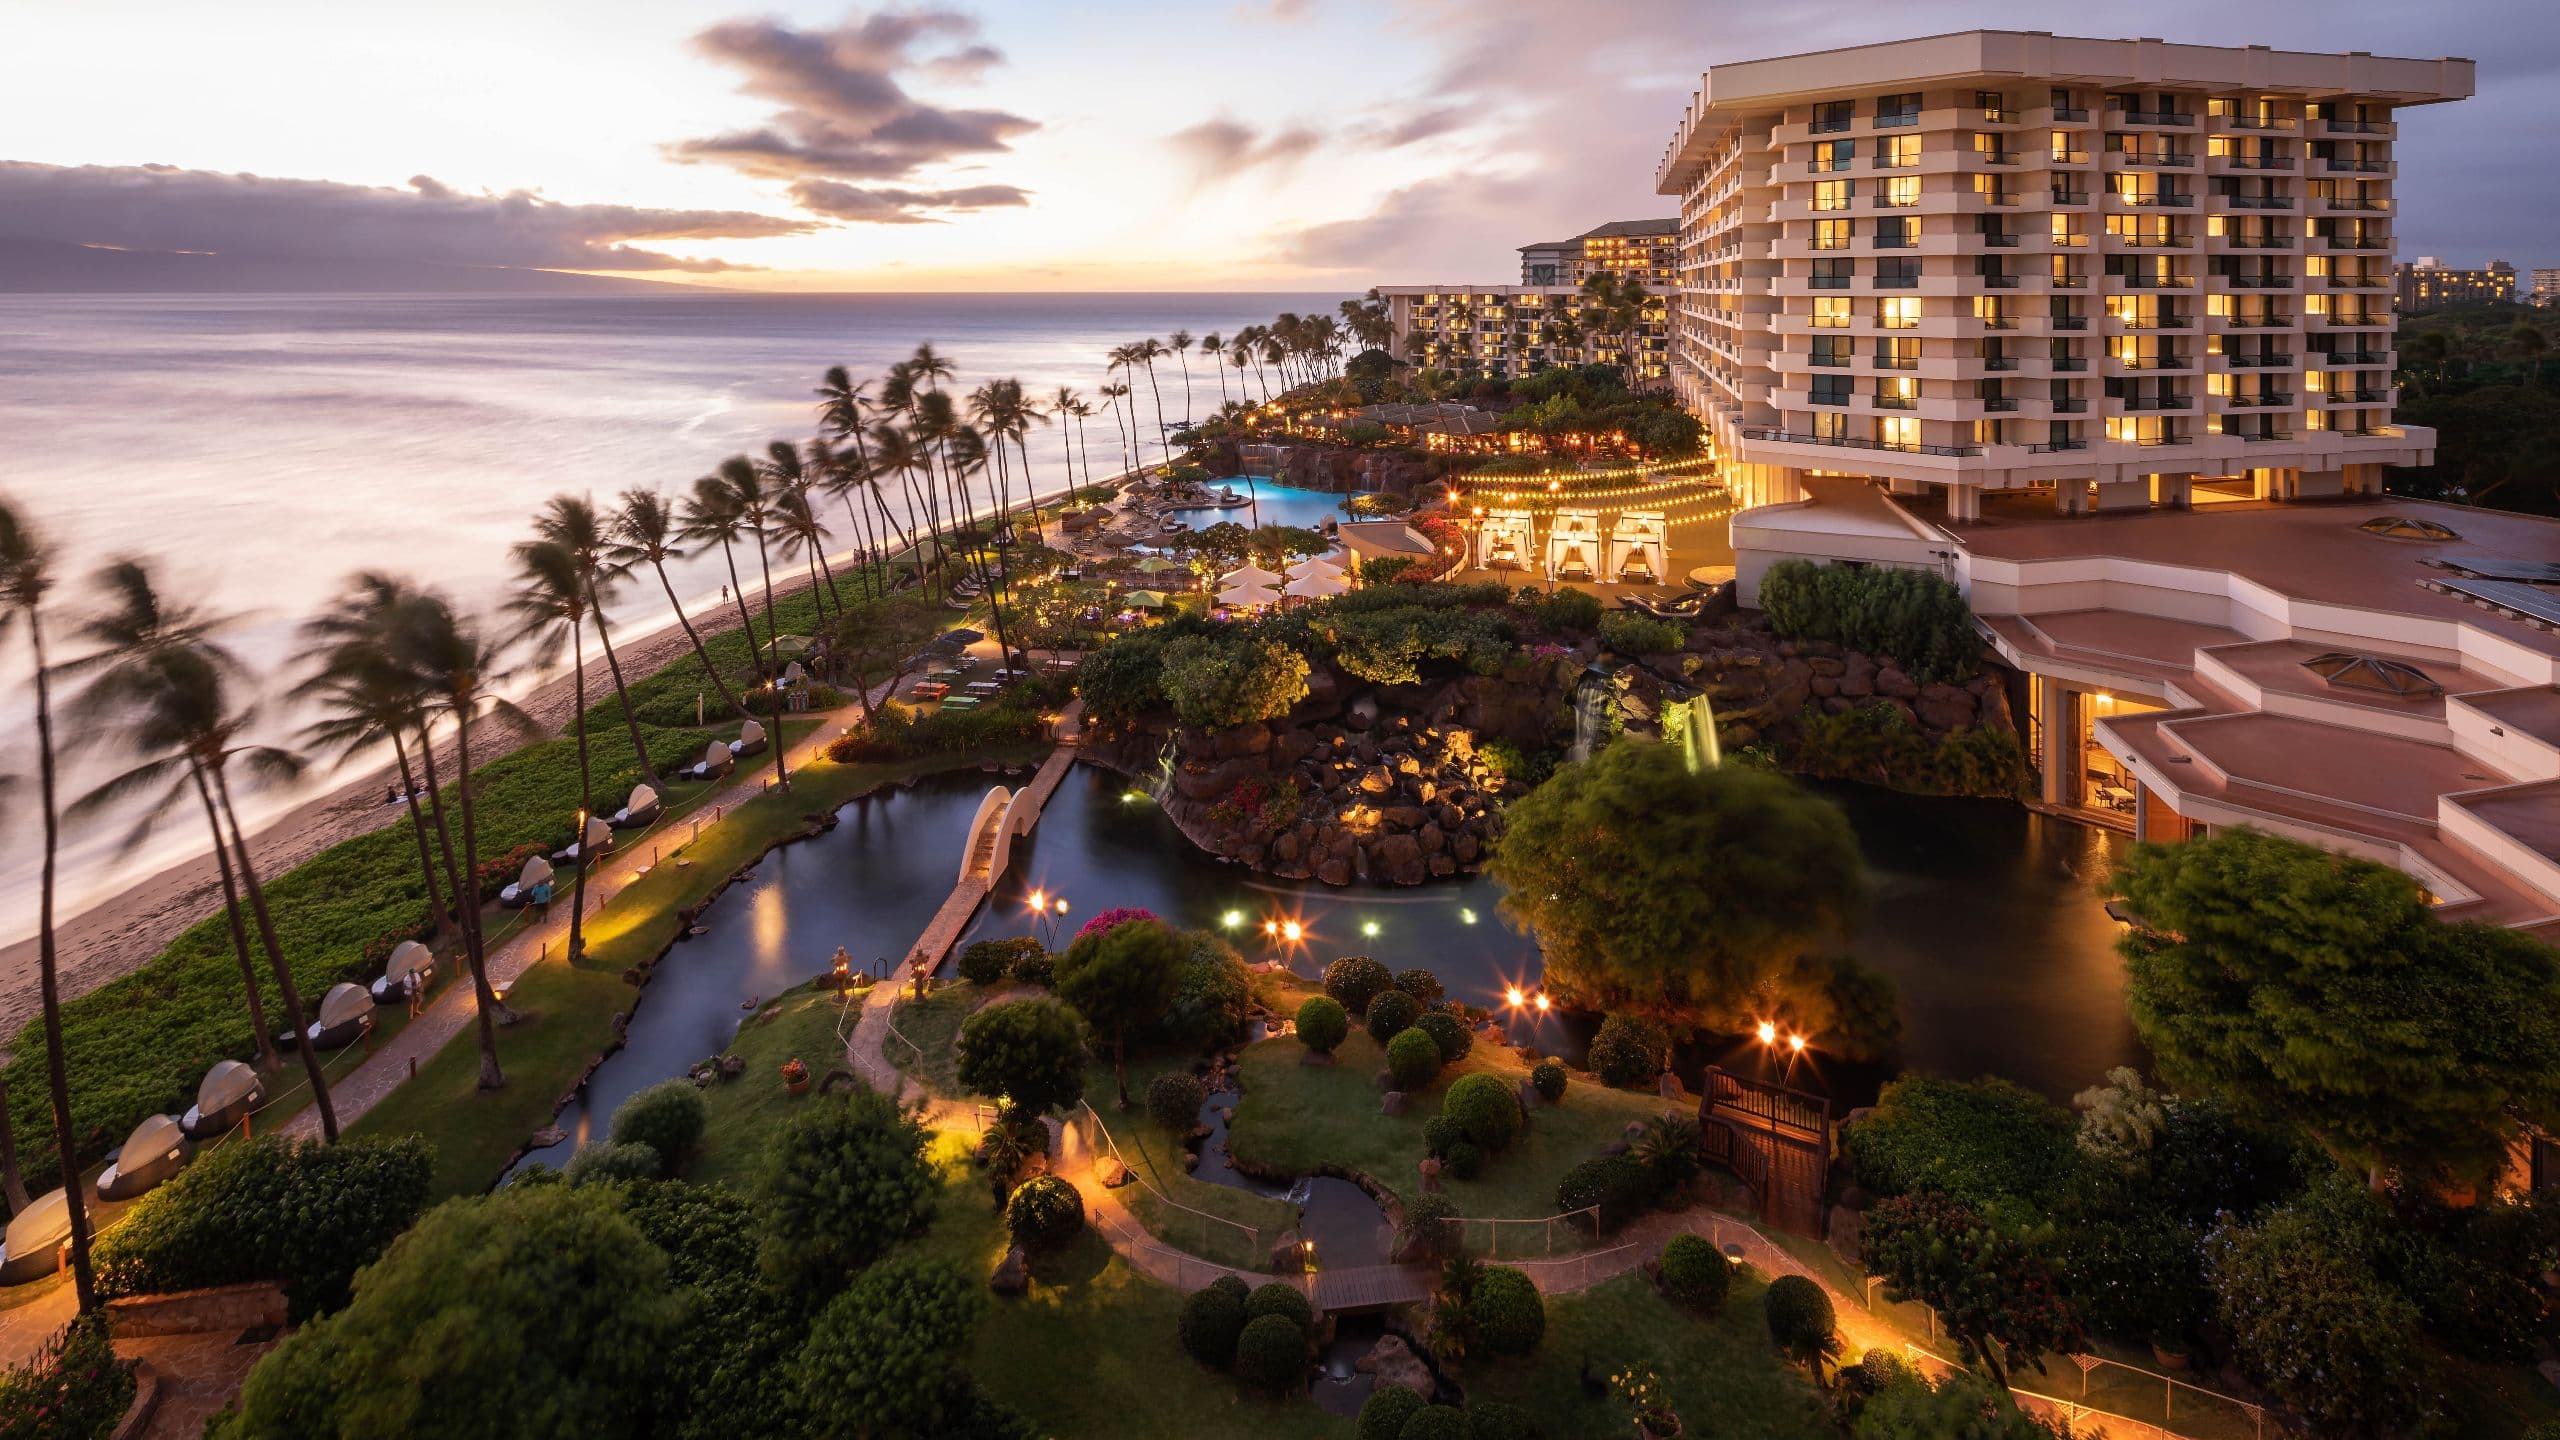 Hyatt Regency Maui Resort and Spa Exterior Evening